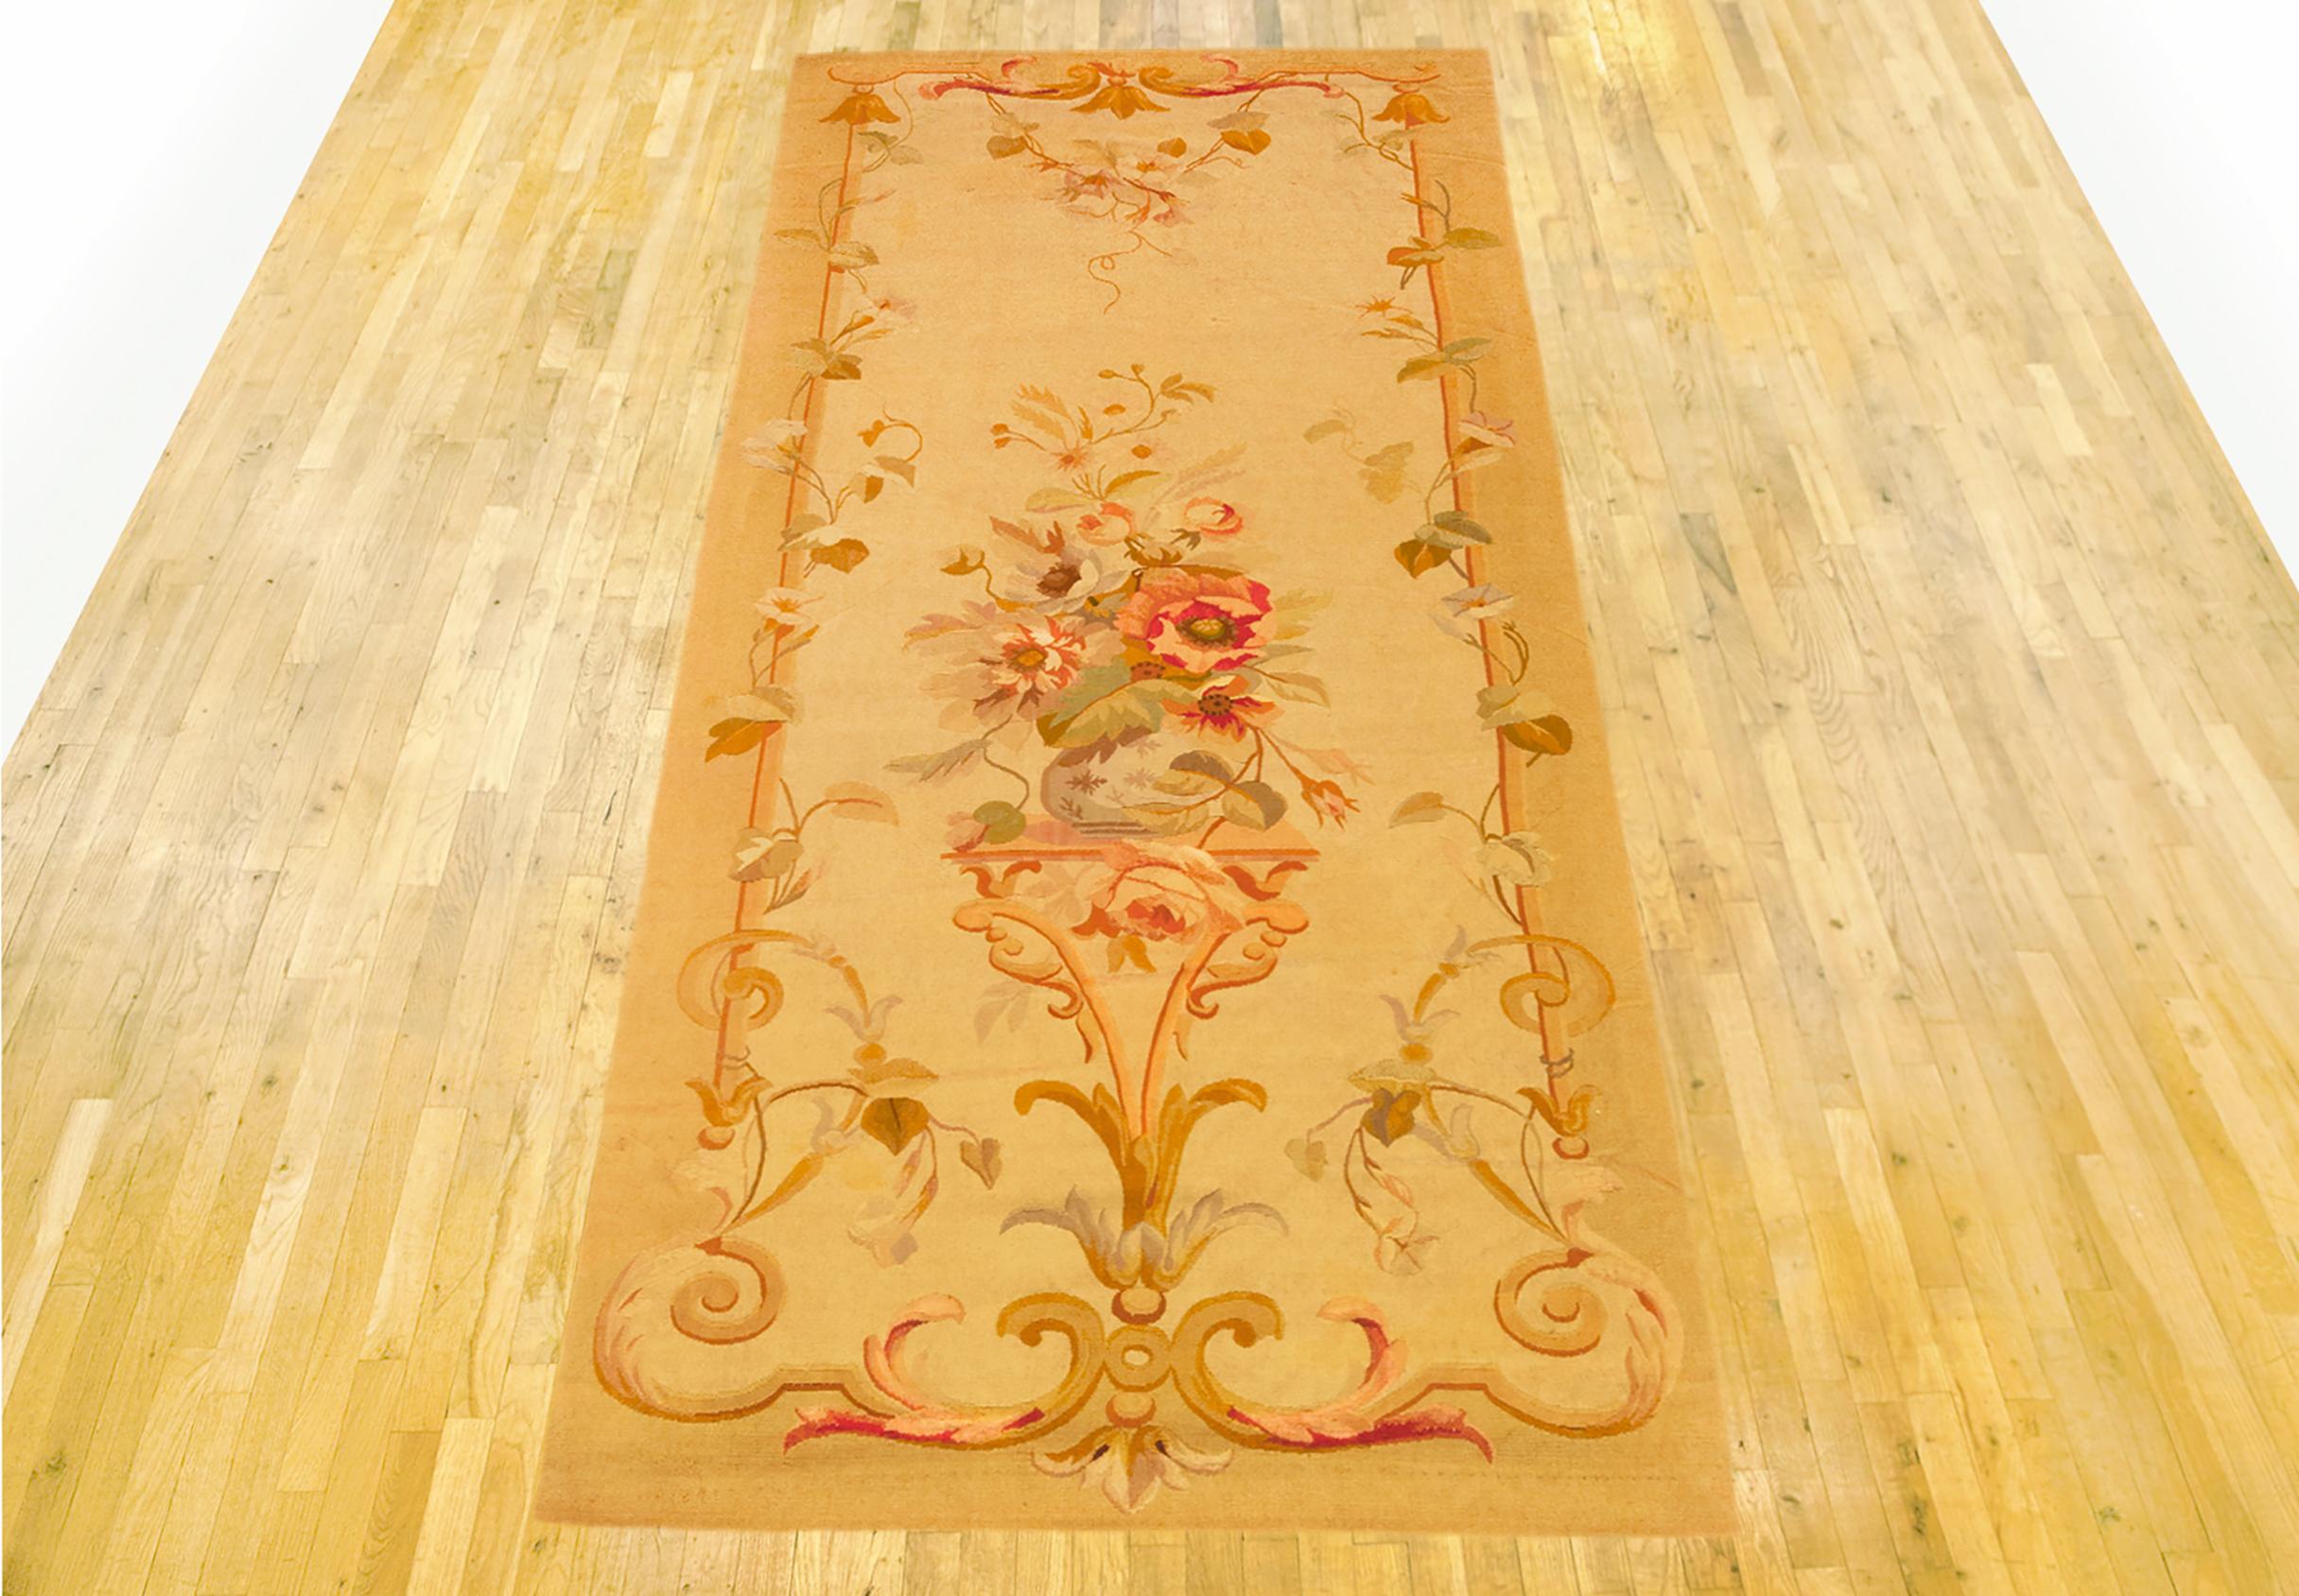 Antiker französischer Aubusson-Teppich, Läufergröße, um 1890

Ein einzigartiger antiker französischer Aubusson-Teppich, handgeknüpft mit weichem Wollflor. Diese schöne handgeknüpfte Wolle Teppich verfügt über eine zentrale Medaillon-Design auf dem